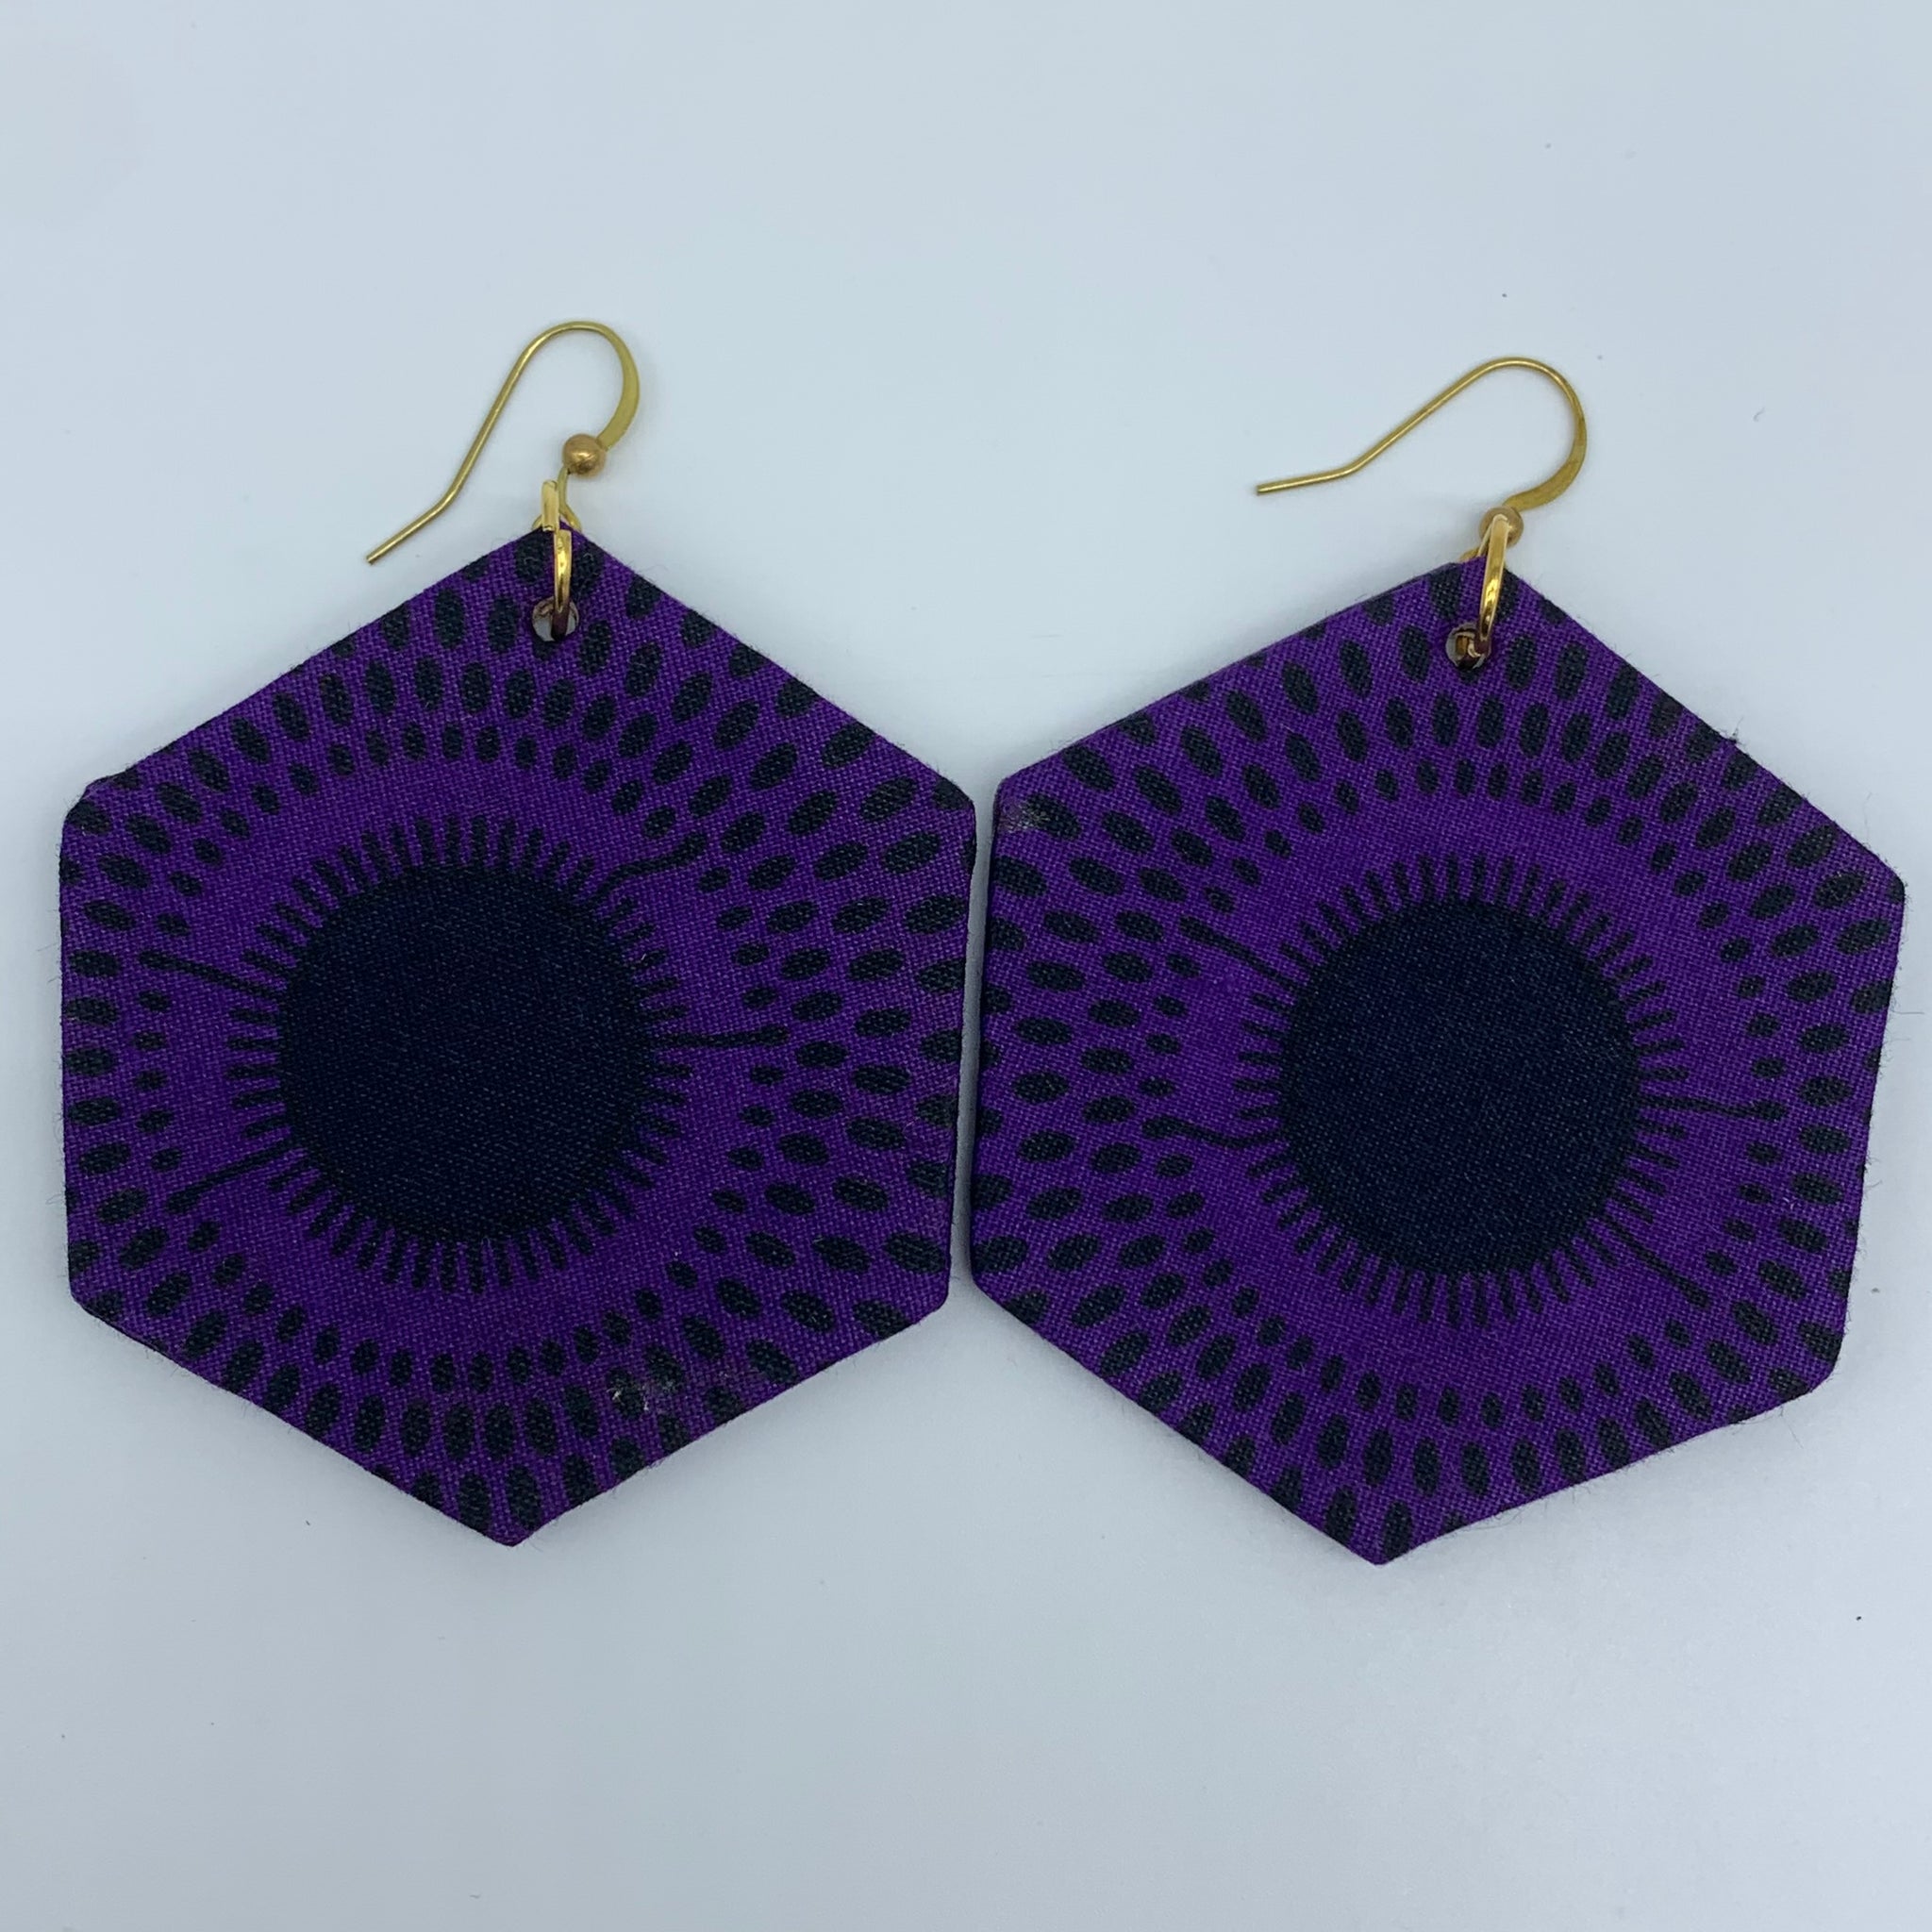 African Print Earrings-Hexa Purple Variation